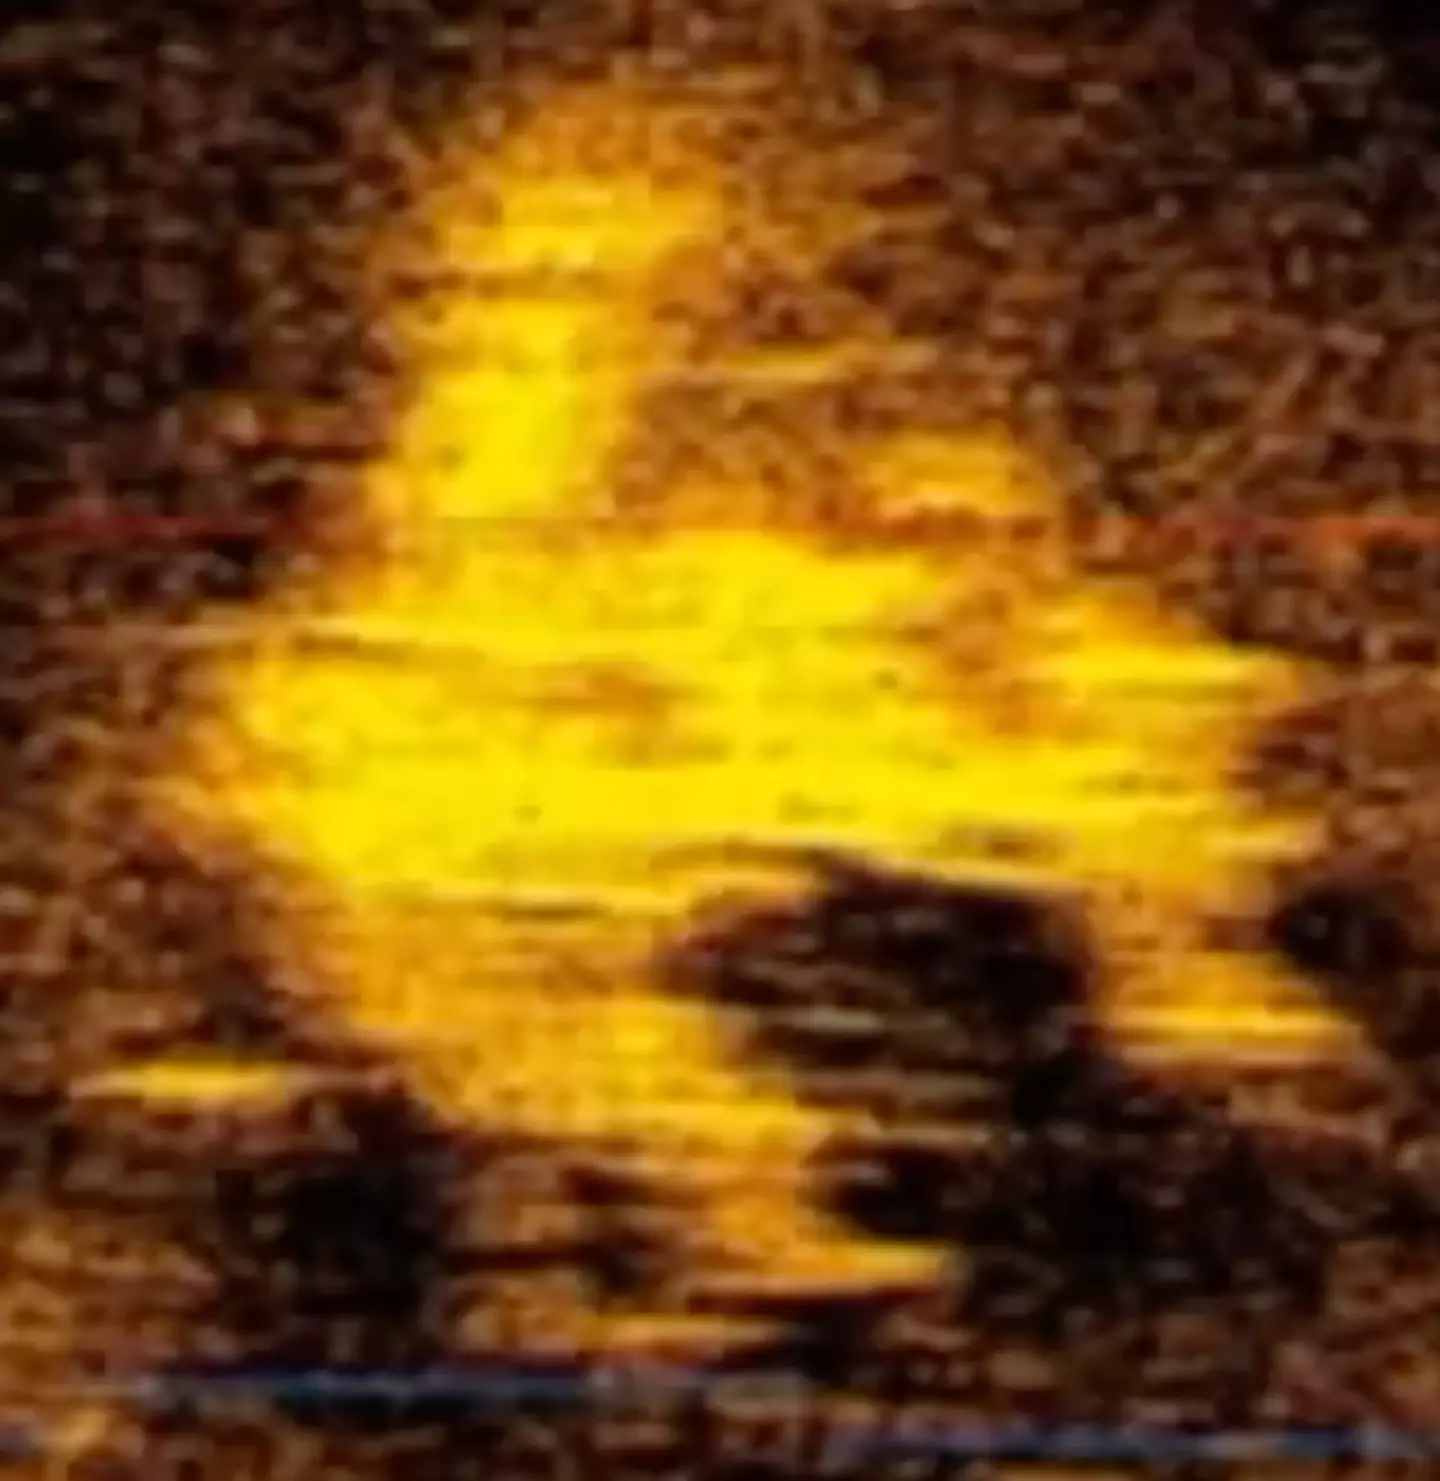 The sonar image shows an object shaped like a plane.